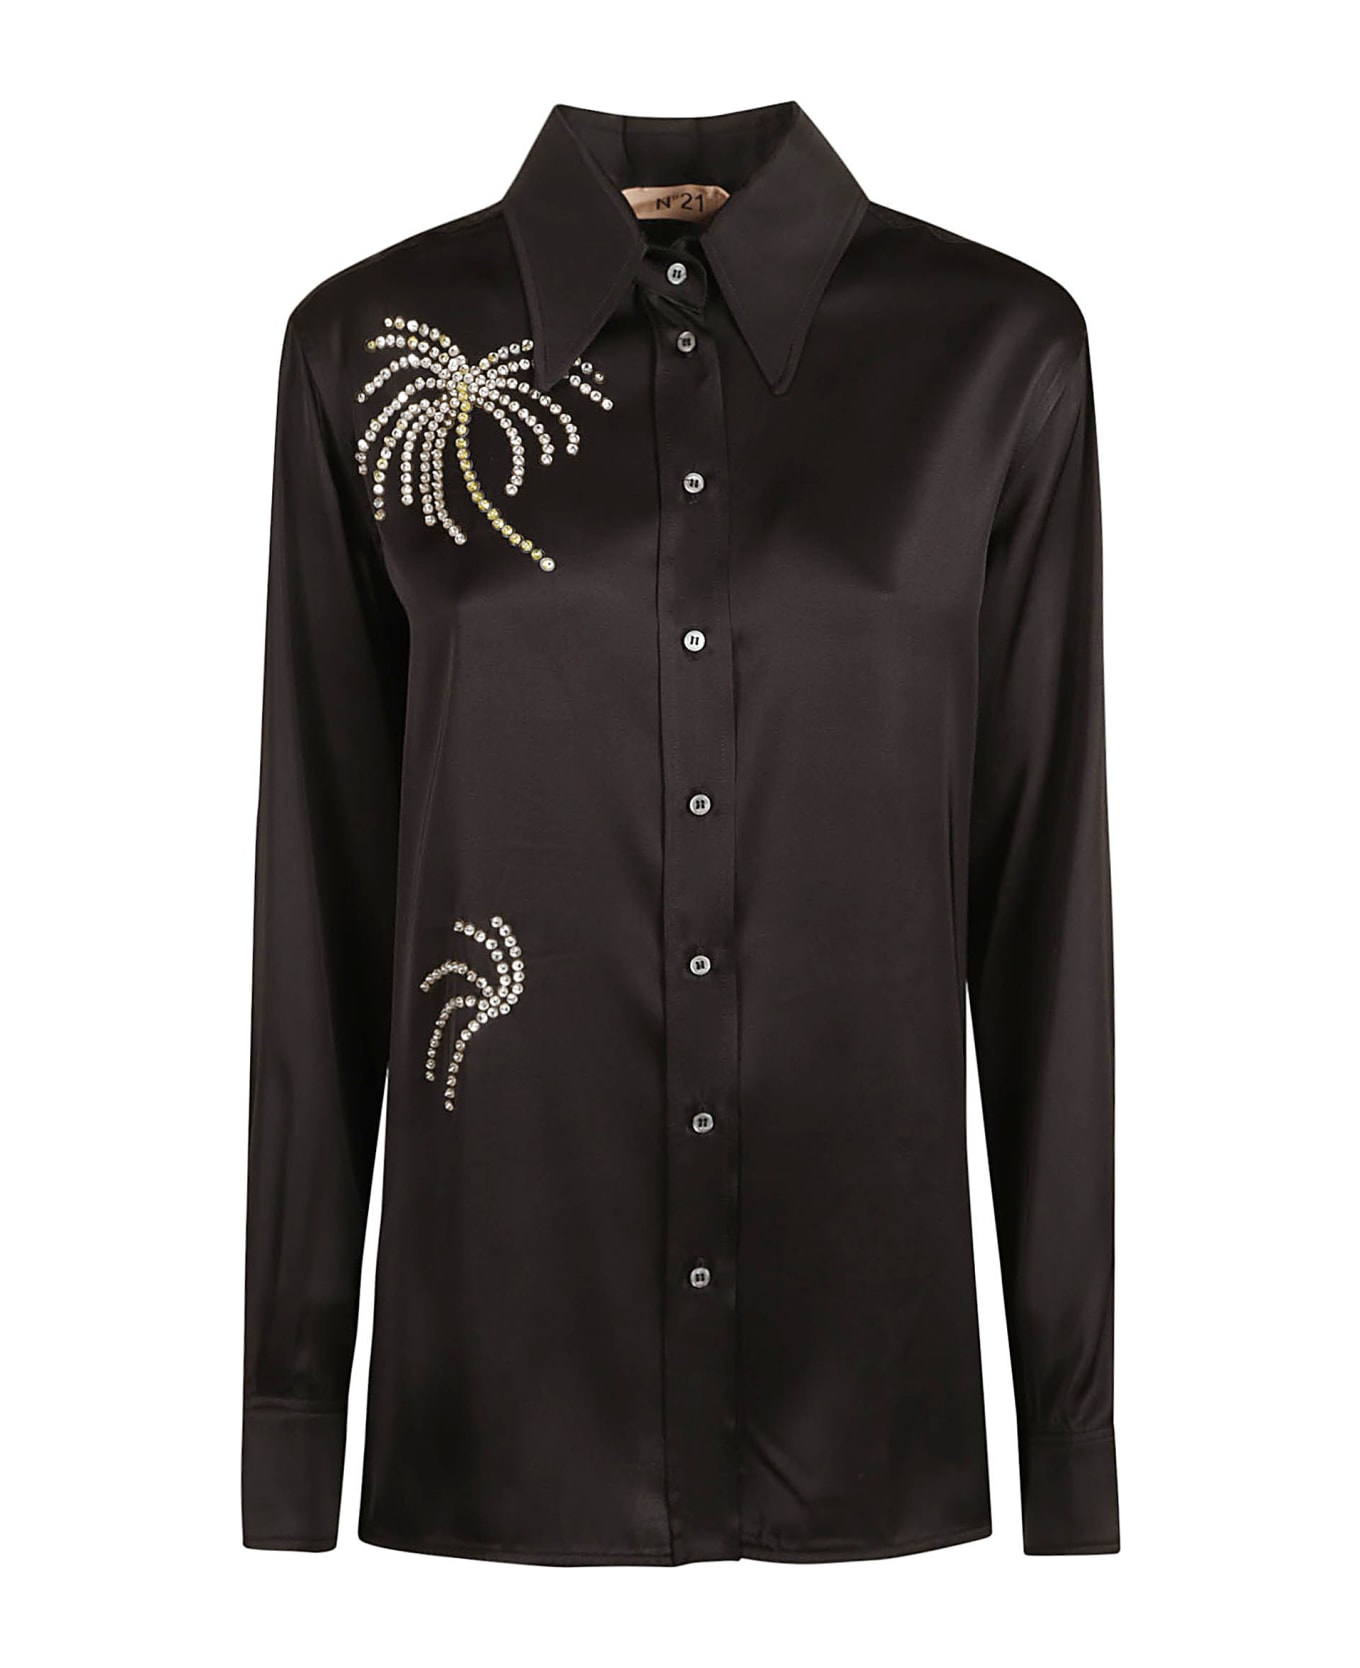 N.21 Embellished Long-sleeved Shirt - Black シャツ